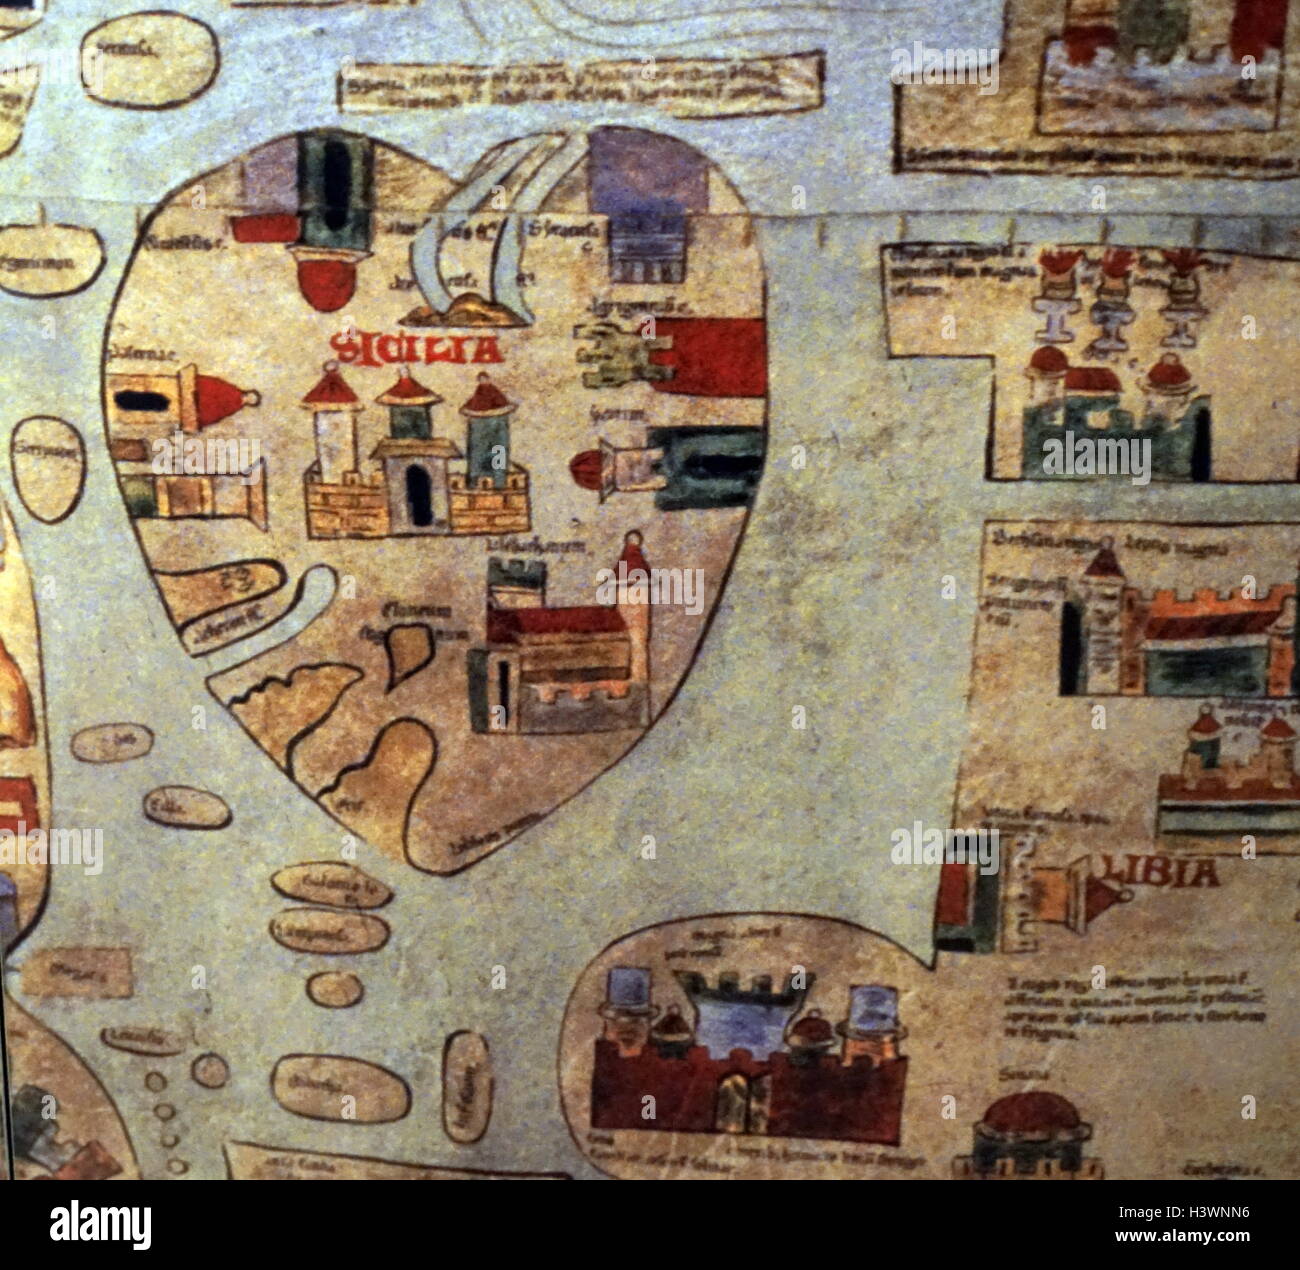 Una dettagliata mappa medievale del mondo come era conosciuto. Datato xiv secolo Foto Stock